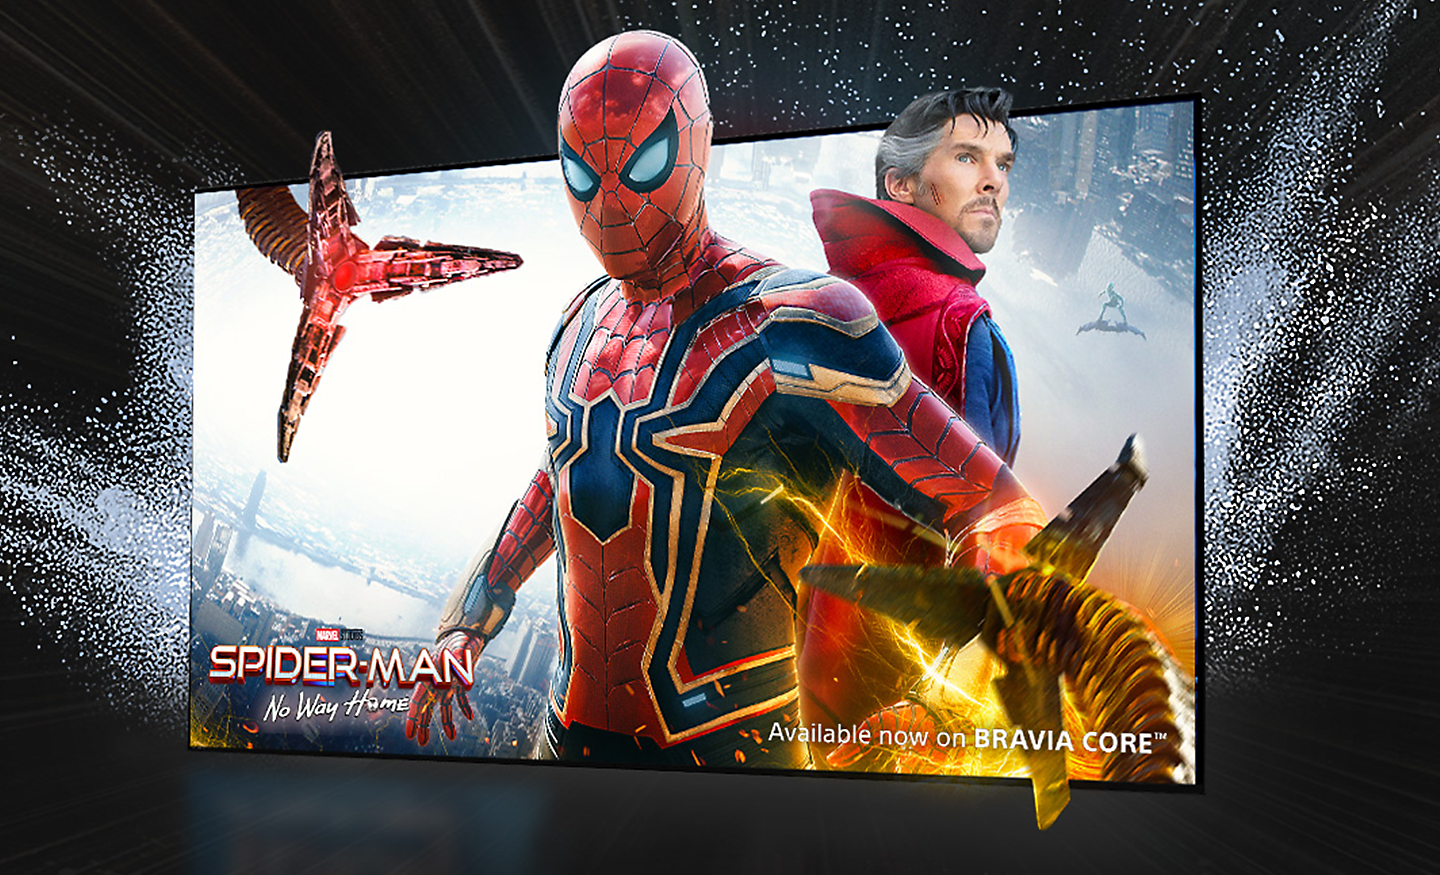 Zaslon televizorja kaže film SPIDER-MAN: Ni poti domov, pri čemer Spider-man sega ven iz zaslona